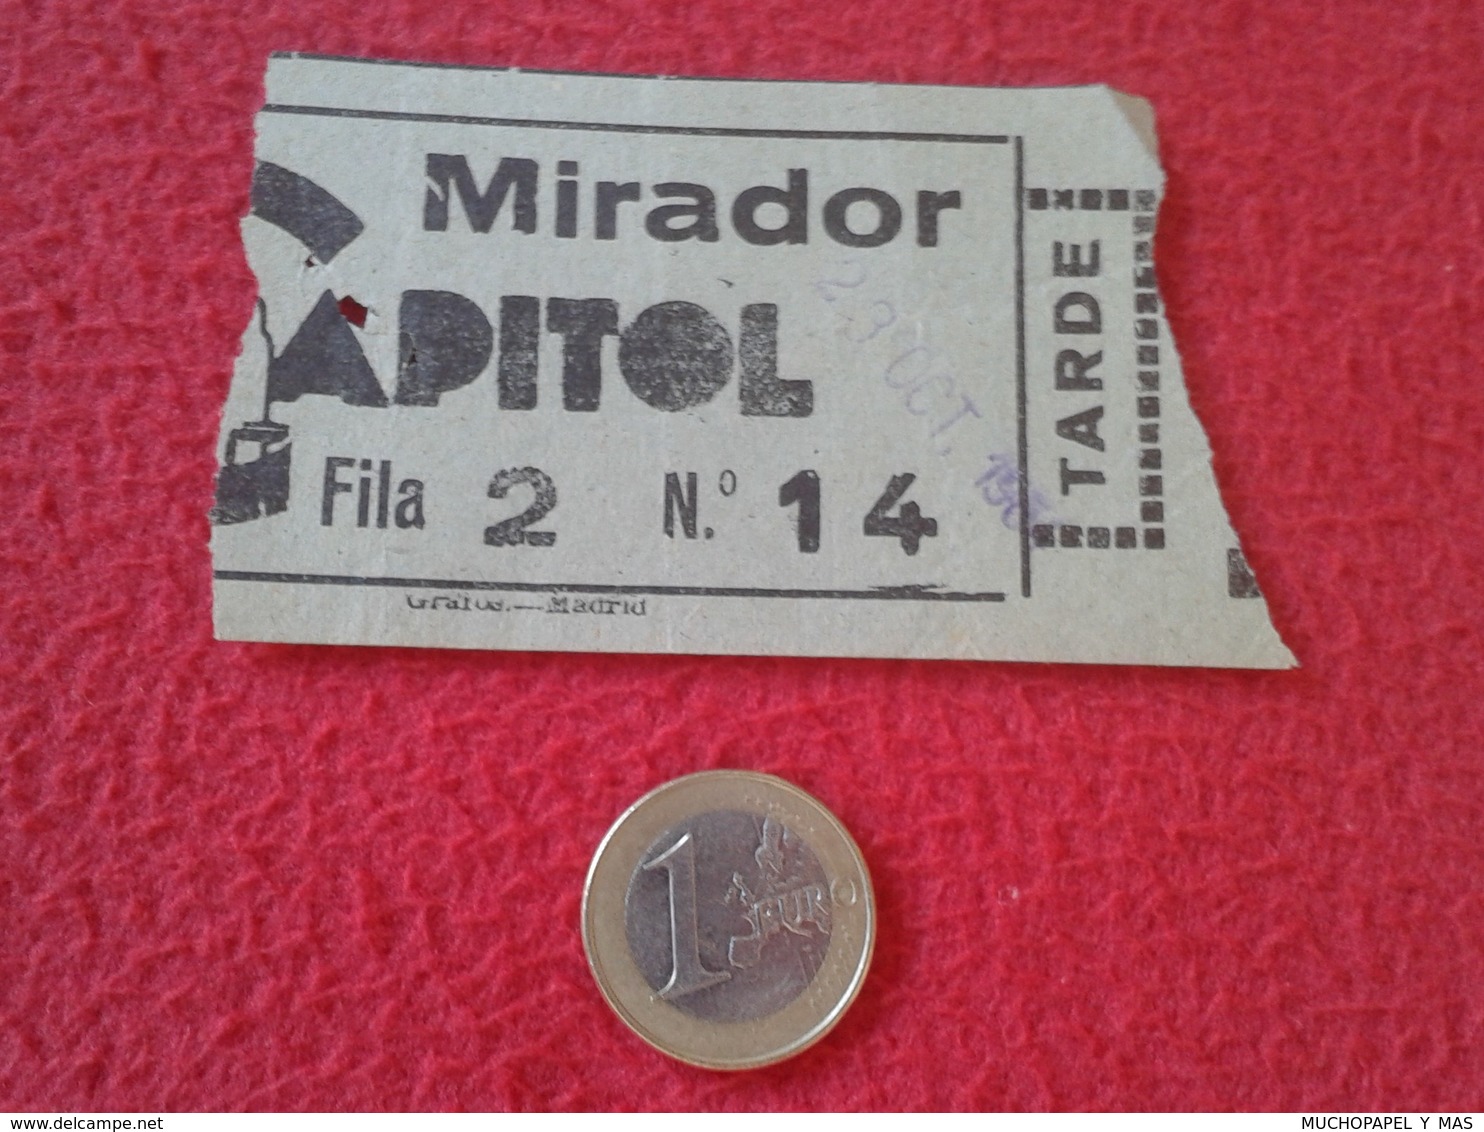 ESPAGNE SPAIN ENTRADA TICKET ENTRY ENTRANCE MIRADOR CAPITOL CINE ? TEATRO ? THEATRE ? MADRID ? TARDE VER FOTO/S. ESPAÑA - Tickets - Entradas